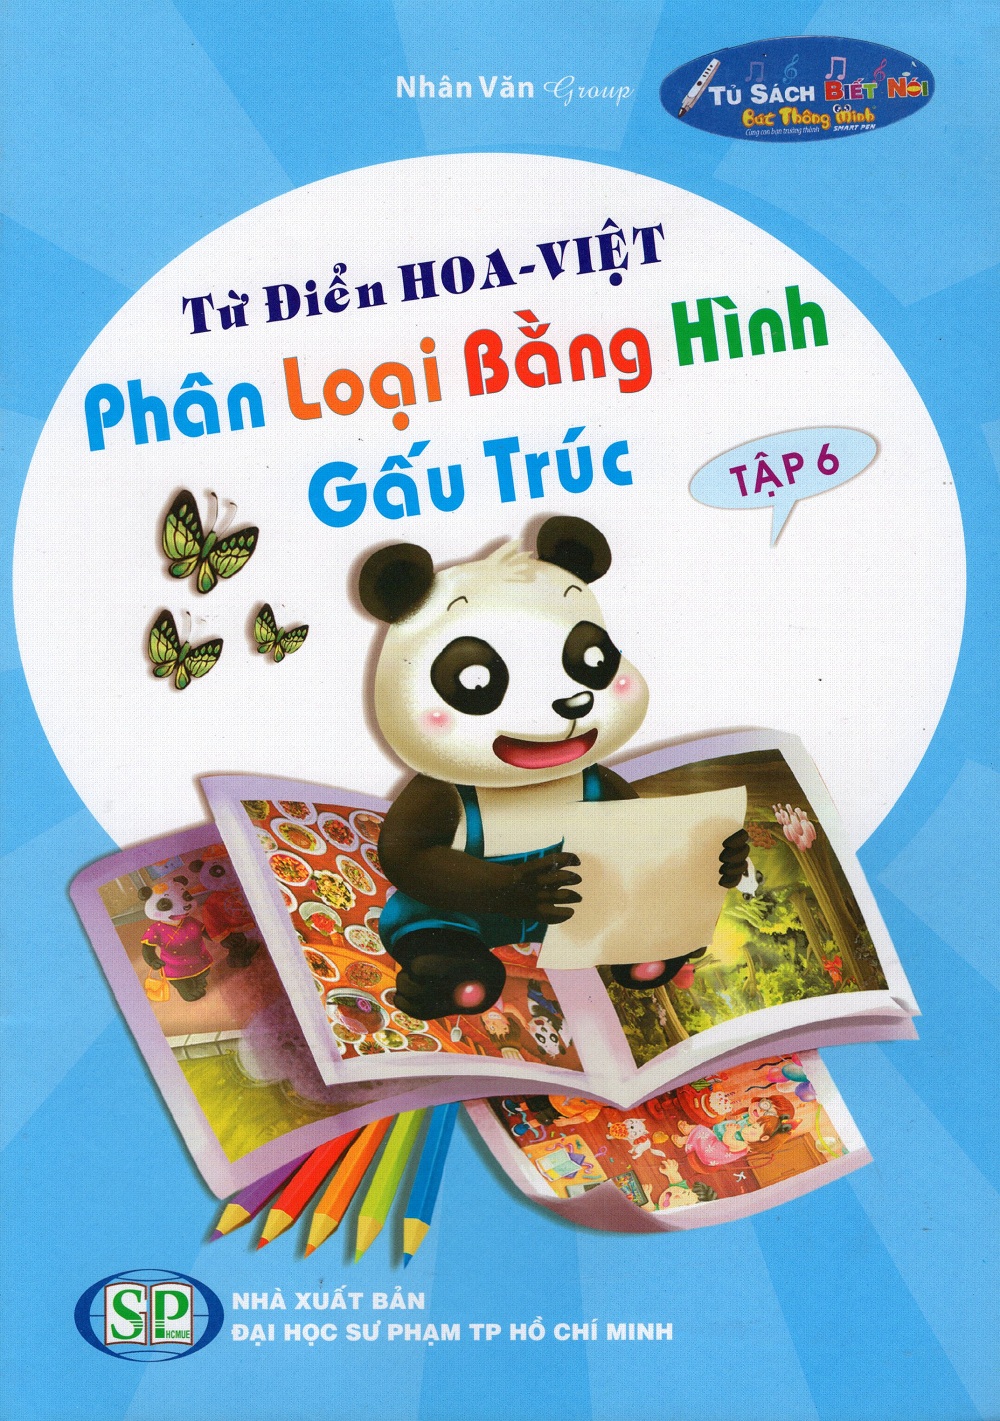 Từ Điển Hoa - Việt Phân Loại Bằng Hình Gấu Trúc (Tập 6)